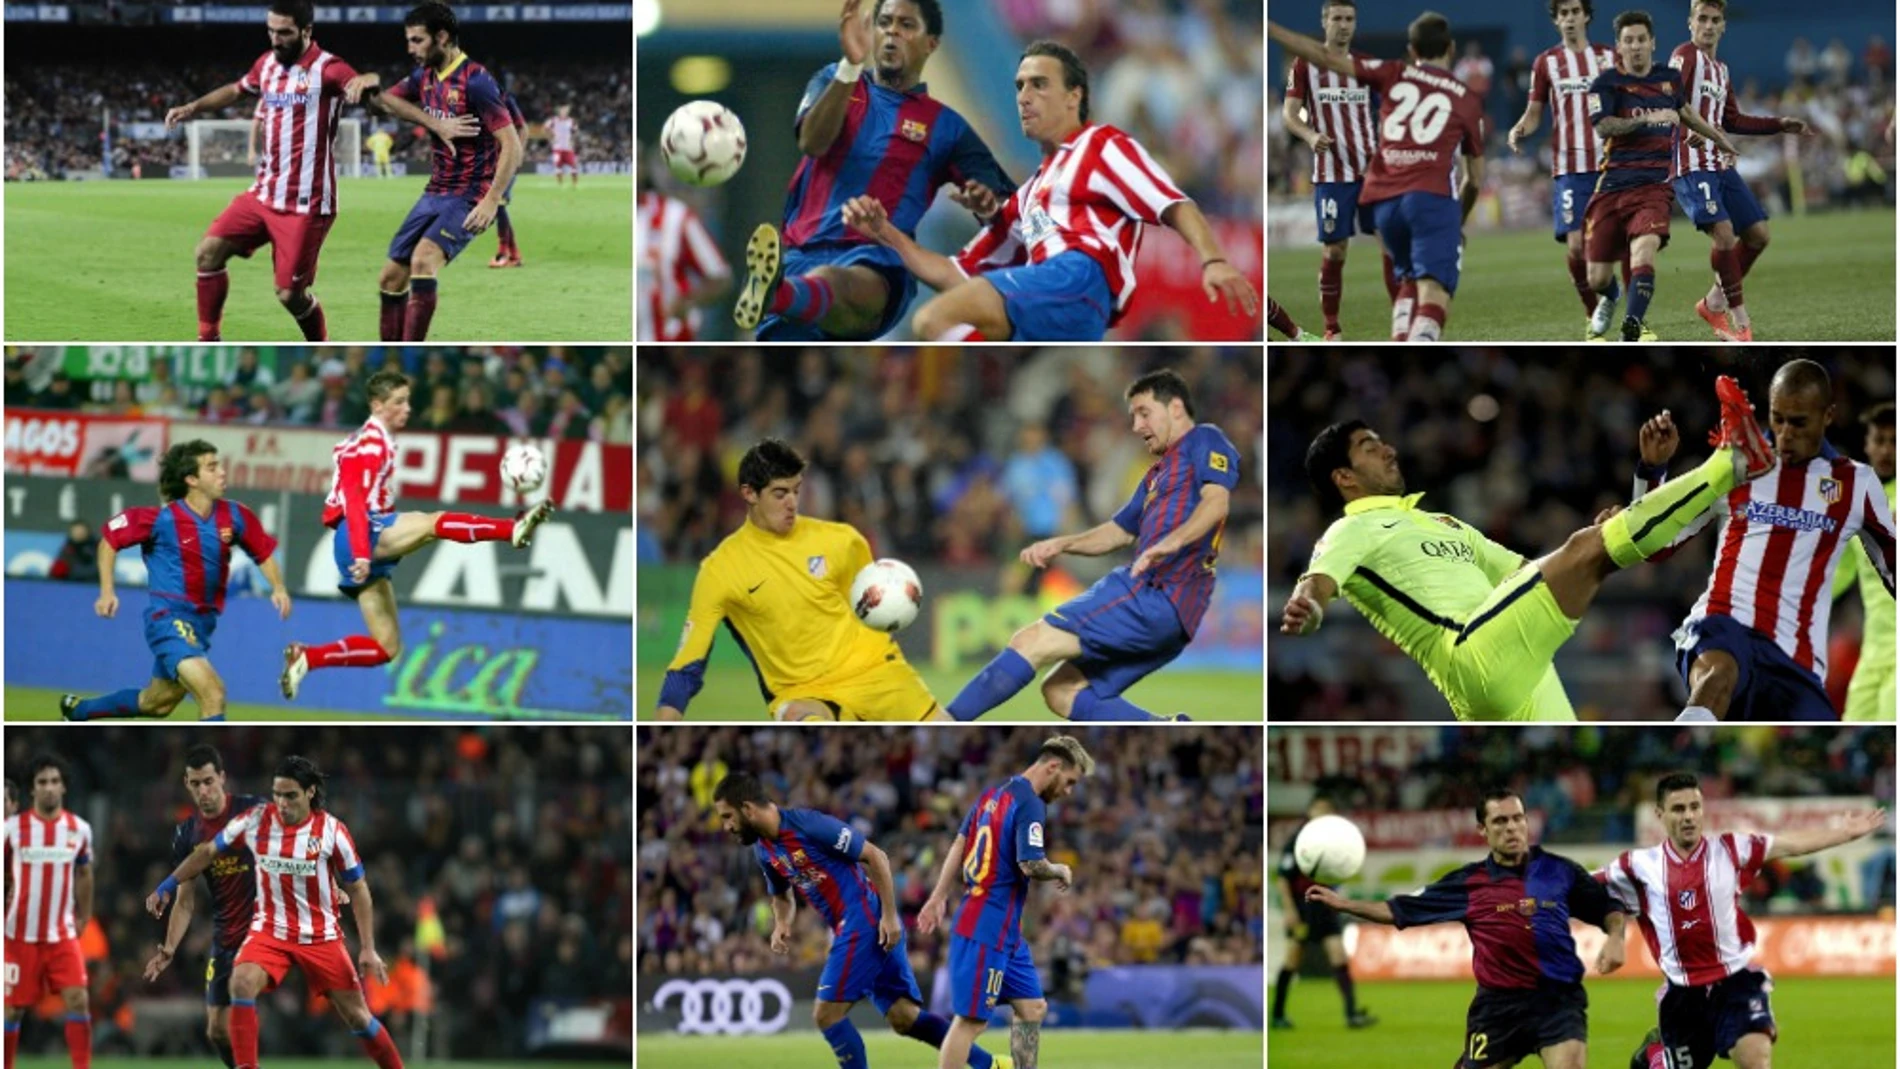 ¿A qué año pertenecen estas fotos del Barça-Atleti? 